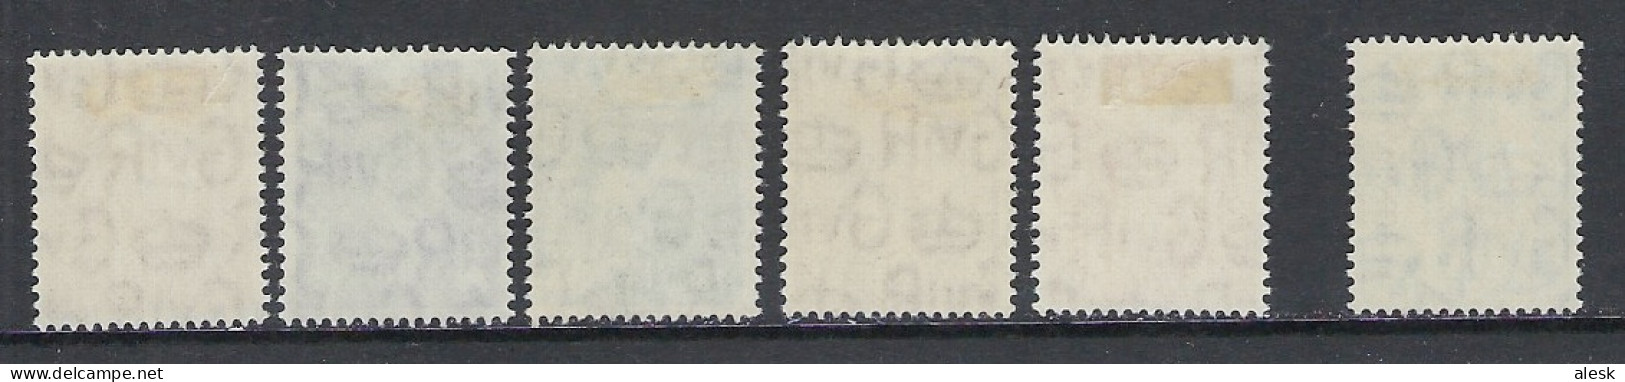 GRANDE-BRETAGNE 1951 - Série N°241 à 255 + 250 (y&t) Avec Charnière - Ungebraucht